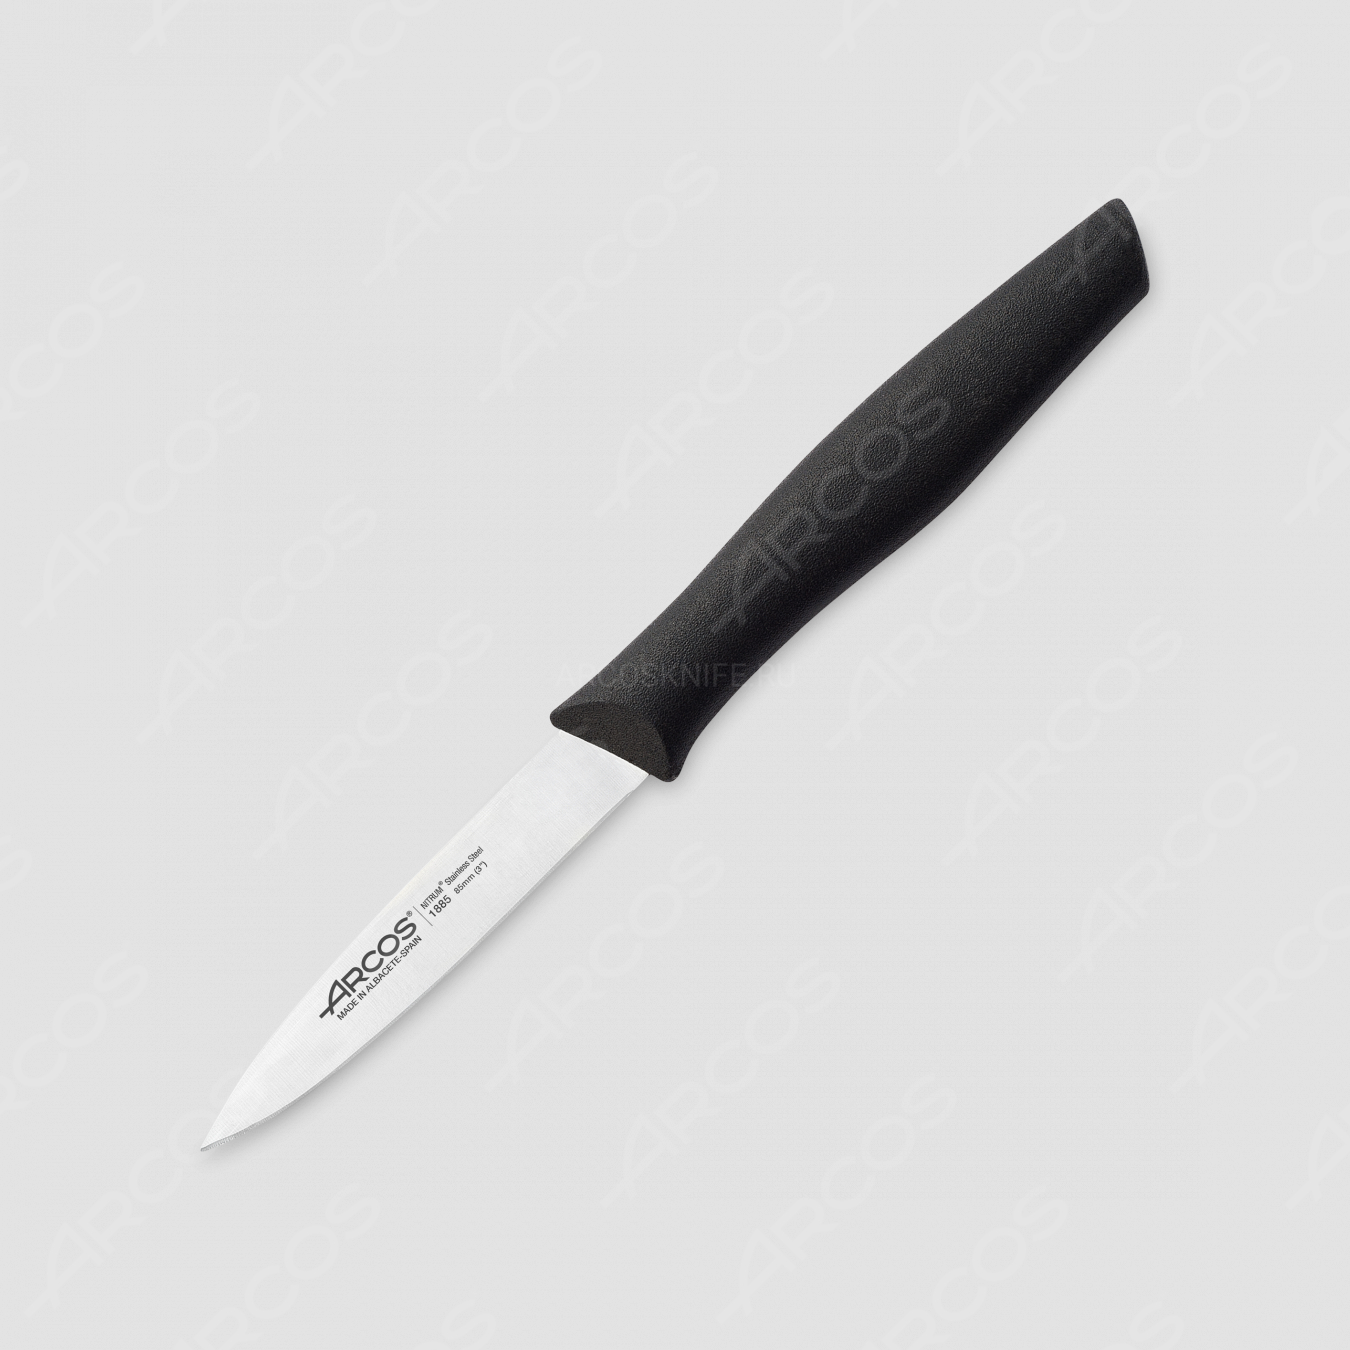 Нож кухонный для чистки 8,5 см, рукоять черная, серия Nova, ARCOS, Испания